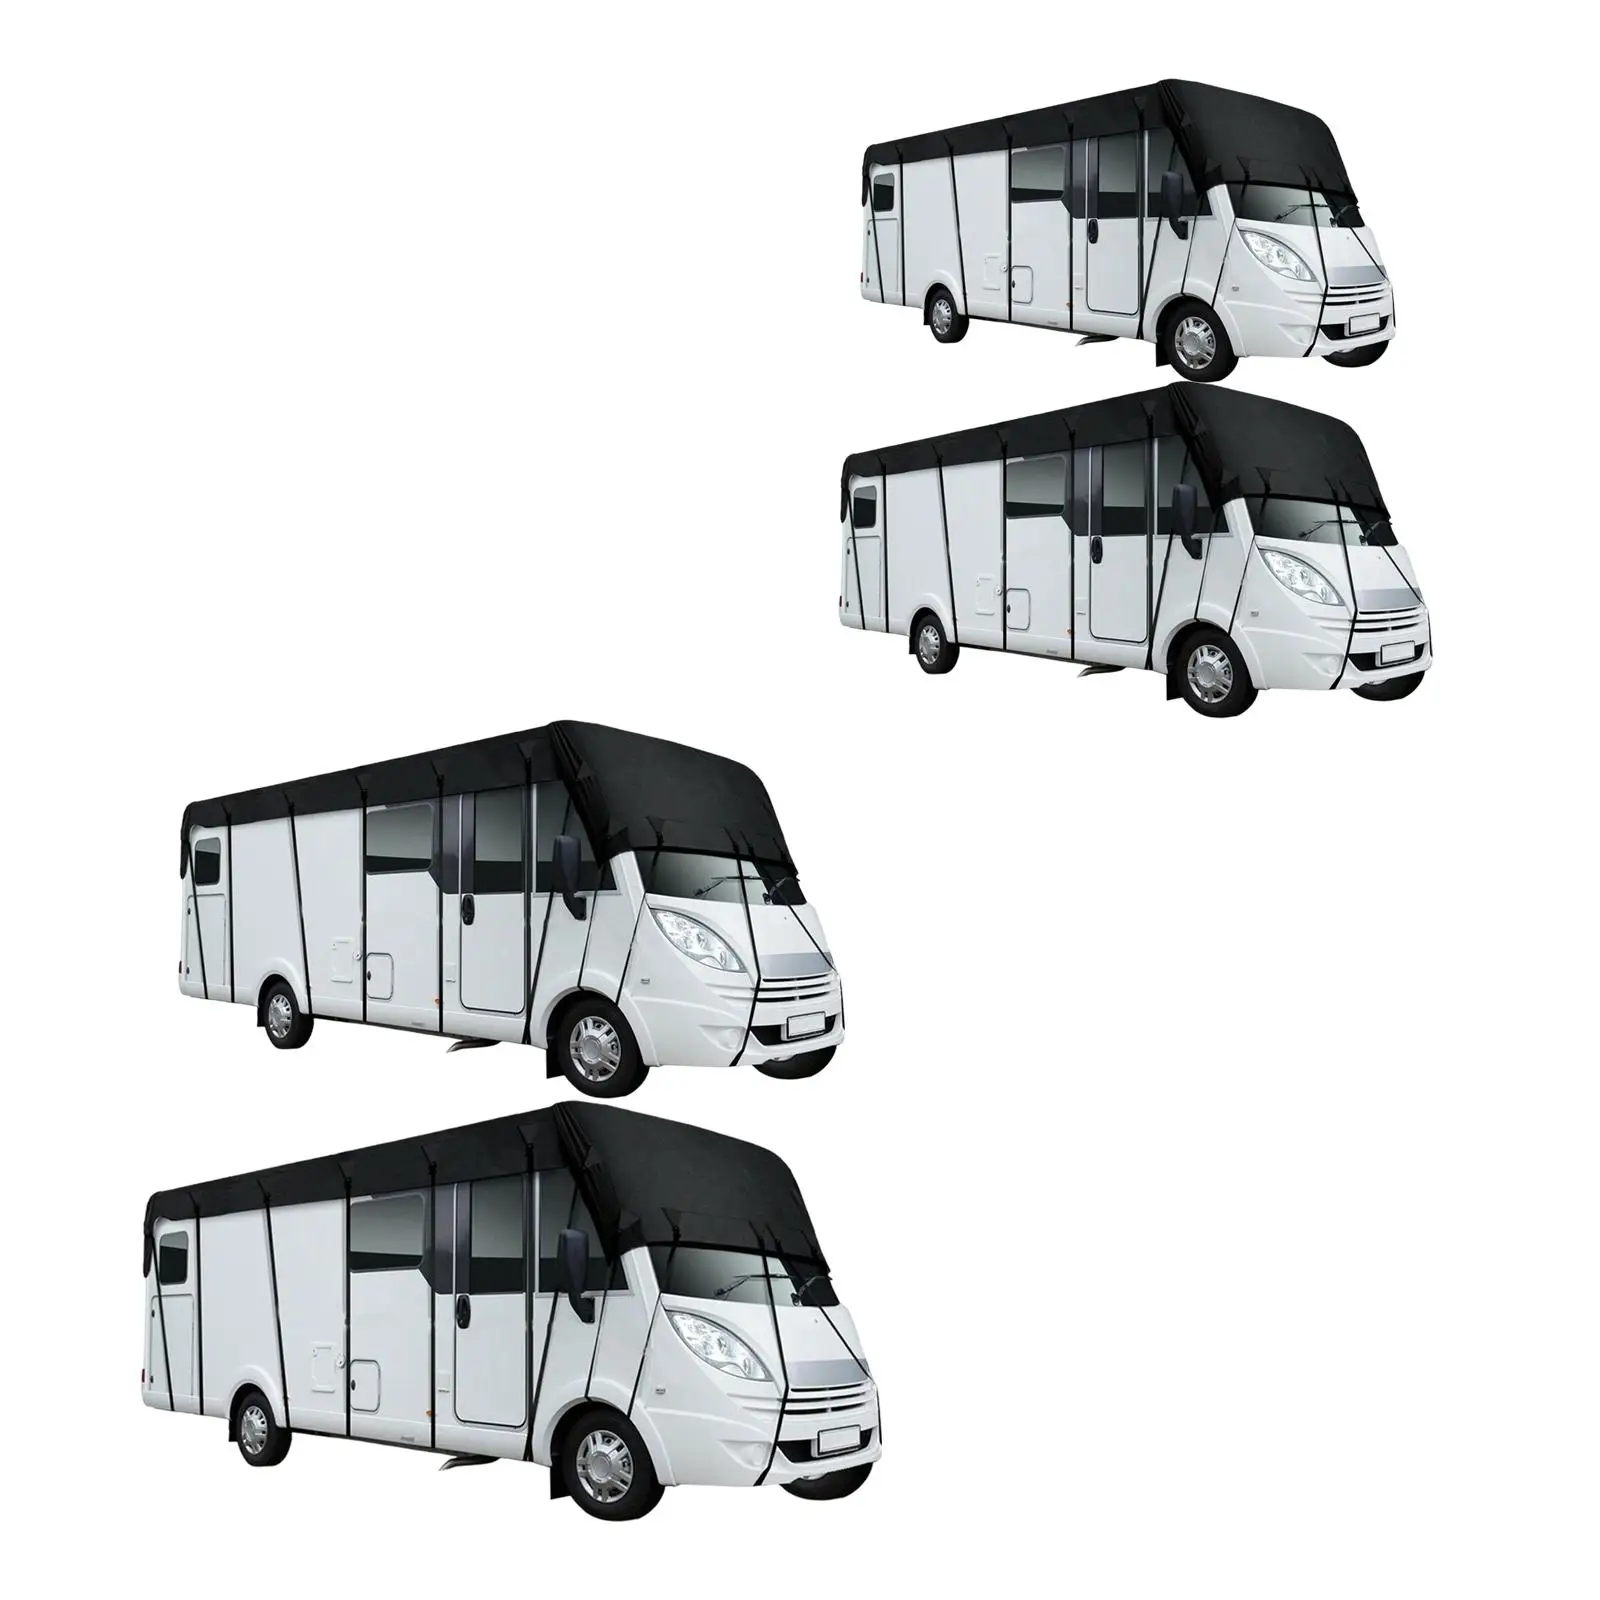 Upgraded RV Caravan Roof Cover Dustproof Wear Resistant for Outdoor Travel Caravan